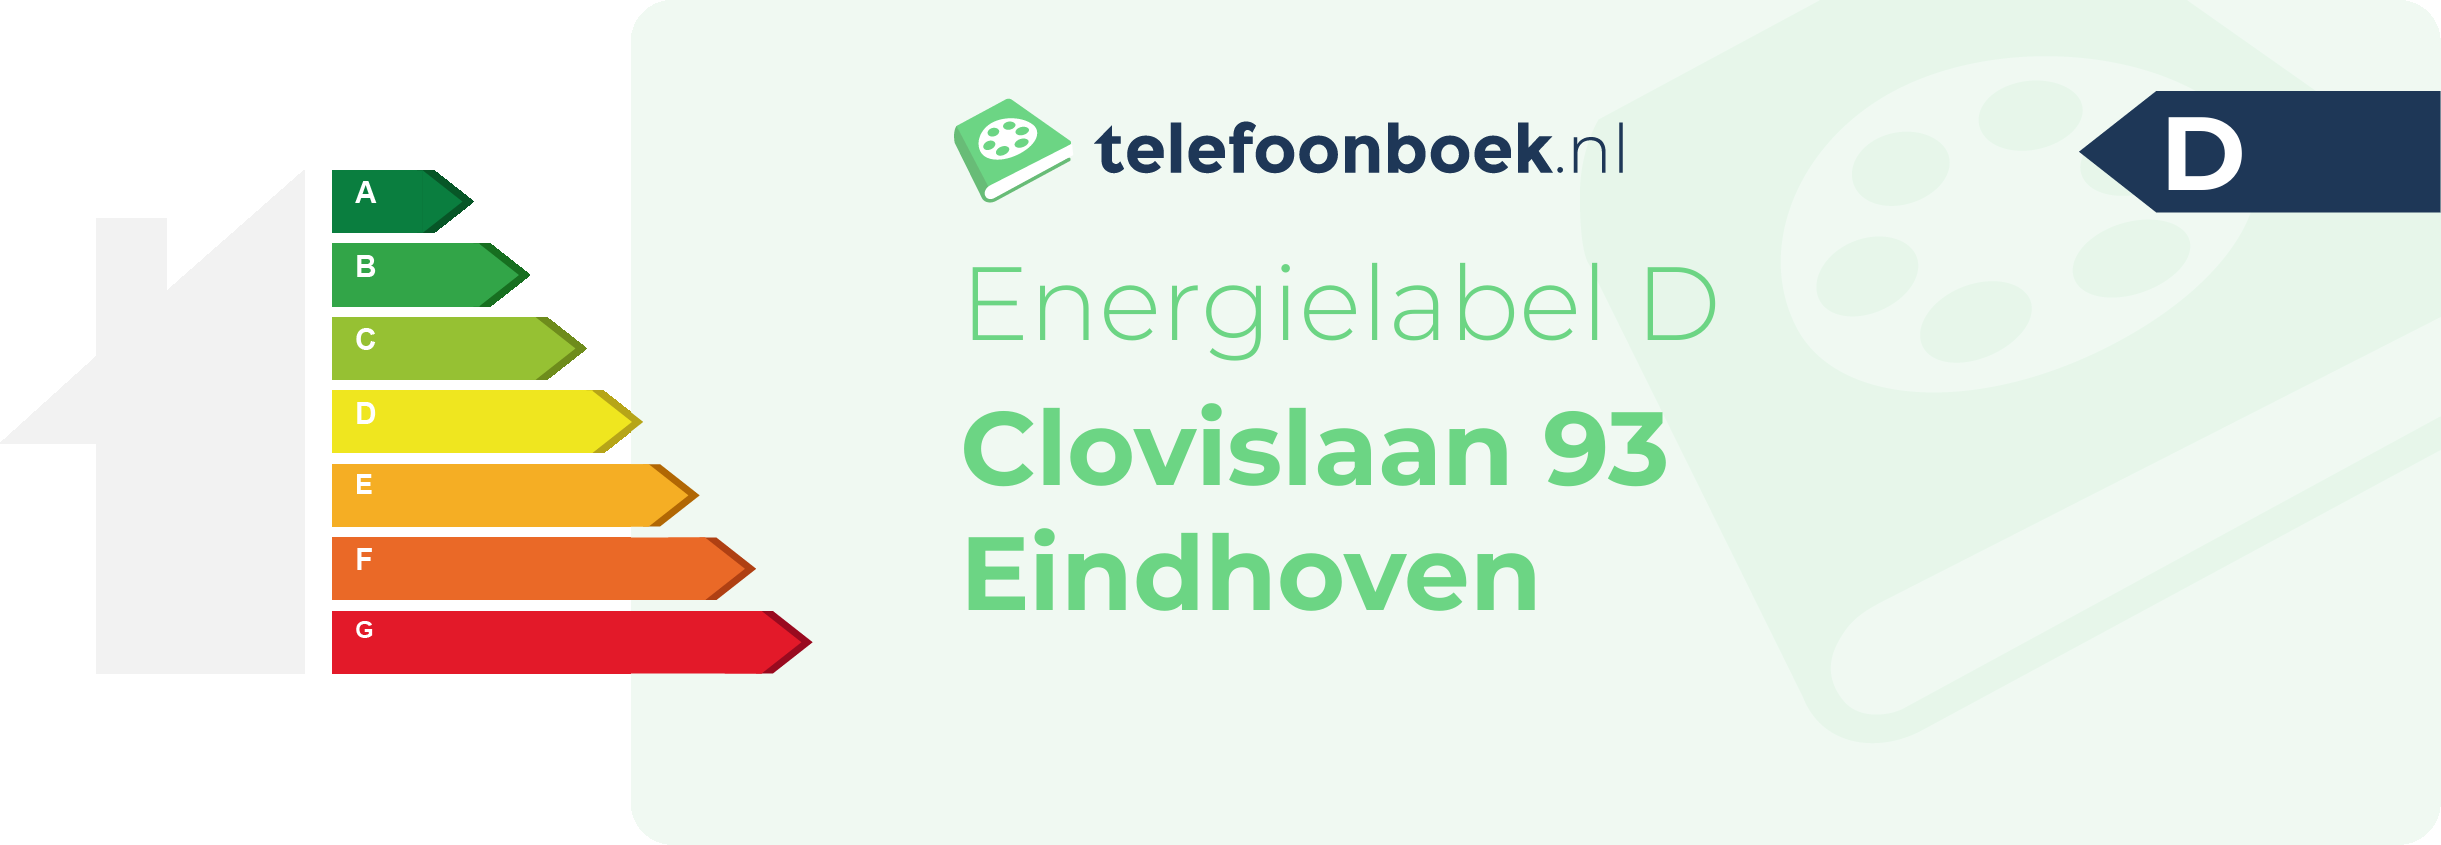 Energielabel Clovislaan 93 Eindhoven